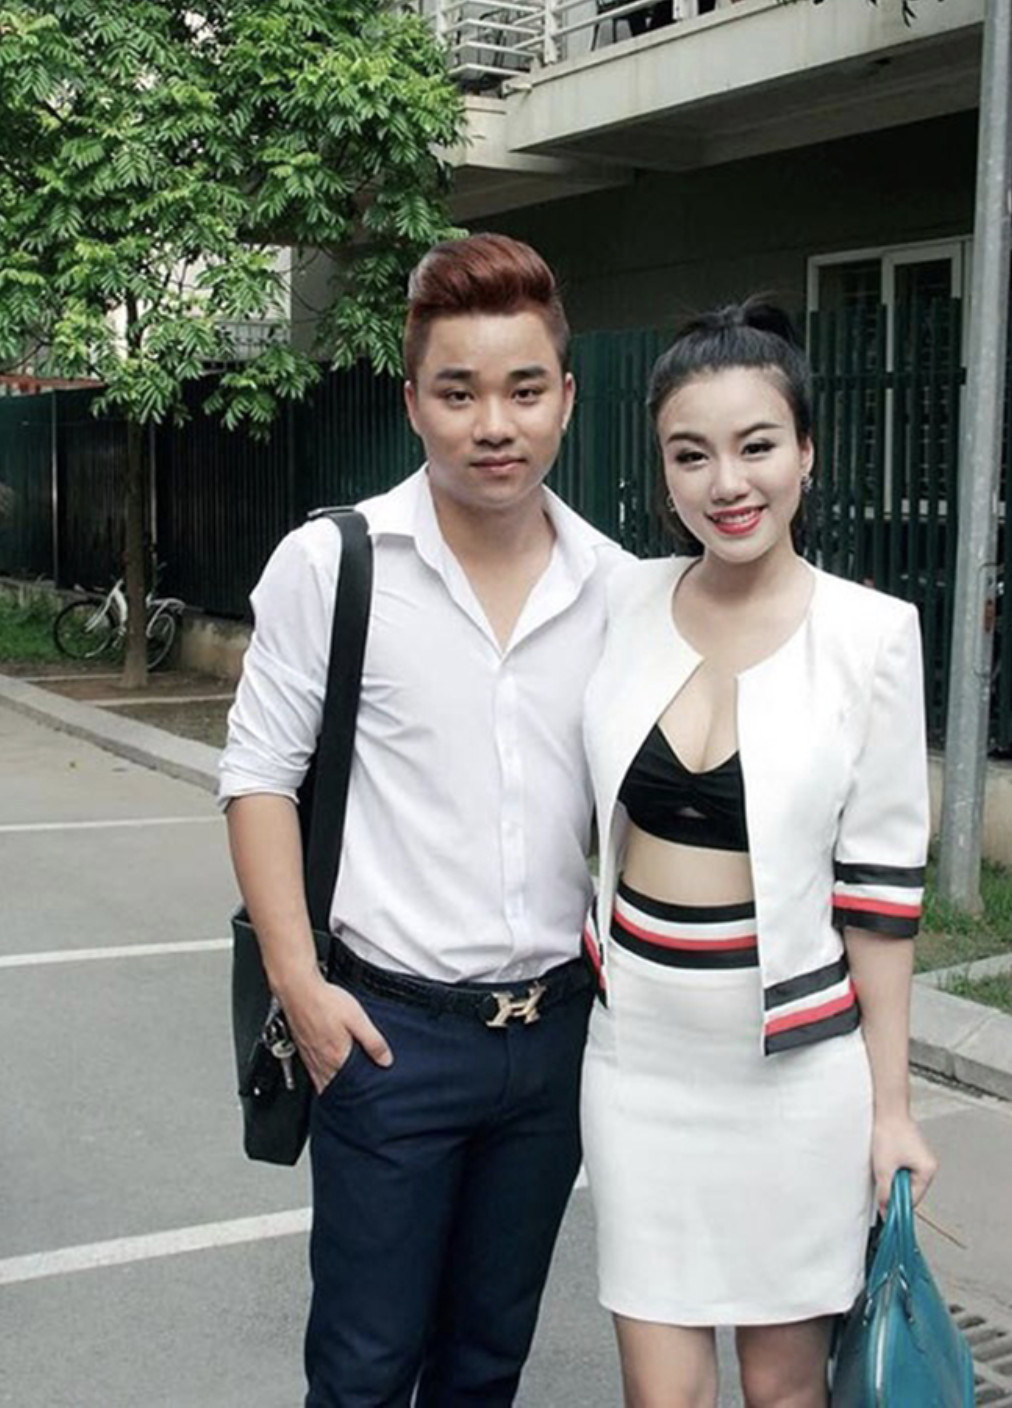 Cả hai chia tay trong ồn ào, hiện Hữu Công đã có vợ còn Linh Miu thì vẫn theo đuổi sự nghiệp diễn xuất, làm mẫu ảnh và kinh doanh riêng